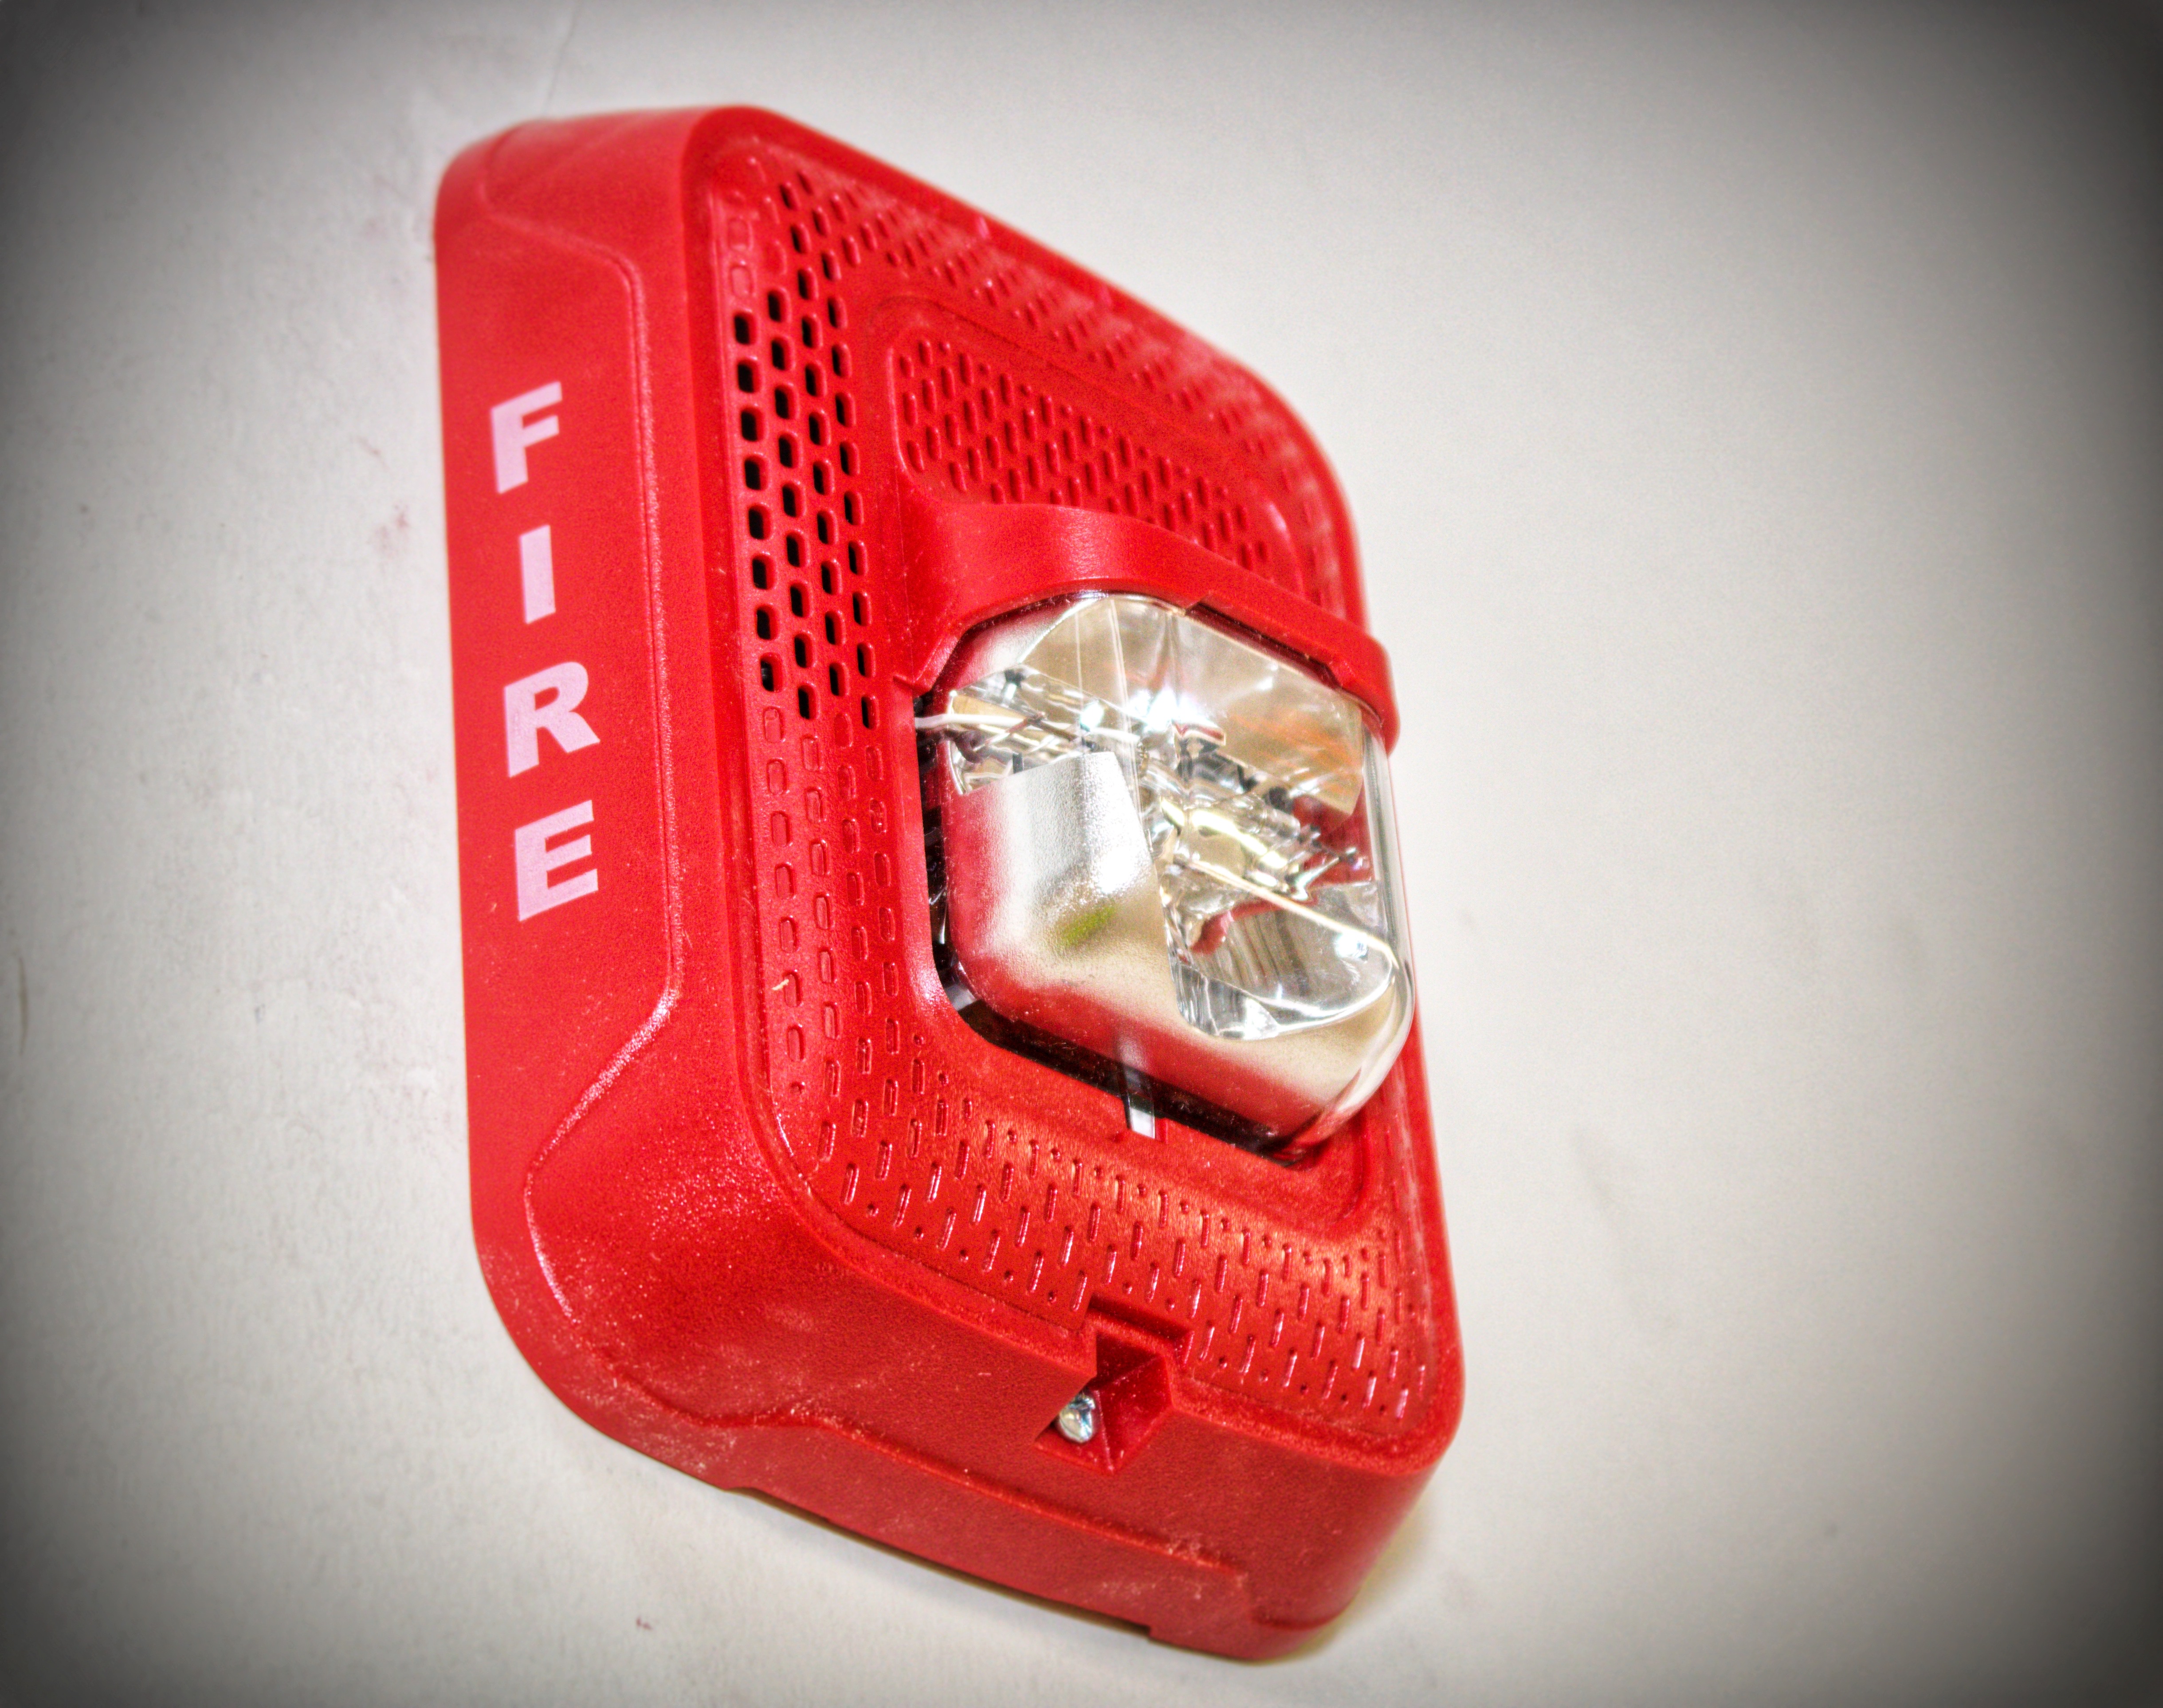 New-Fire-Alarm-by-Notifier